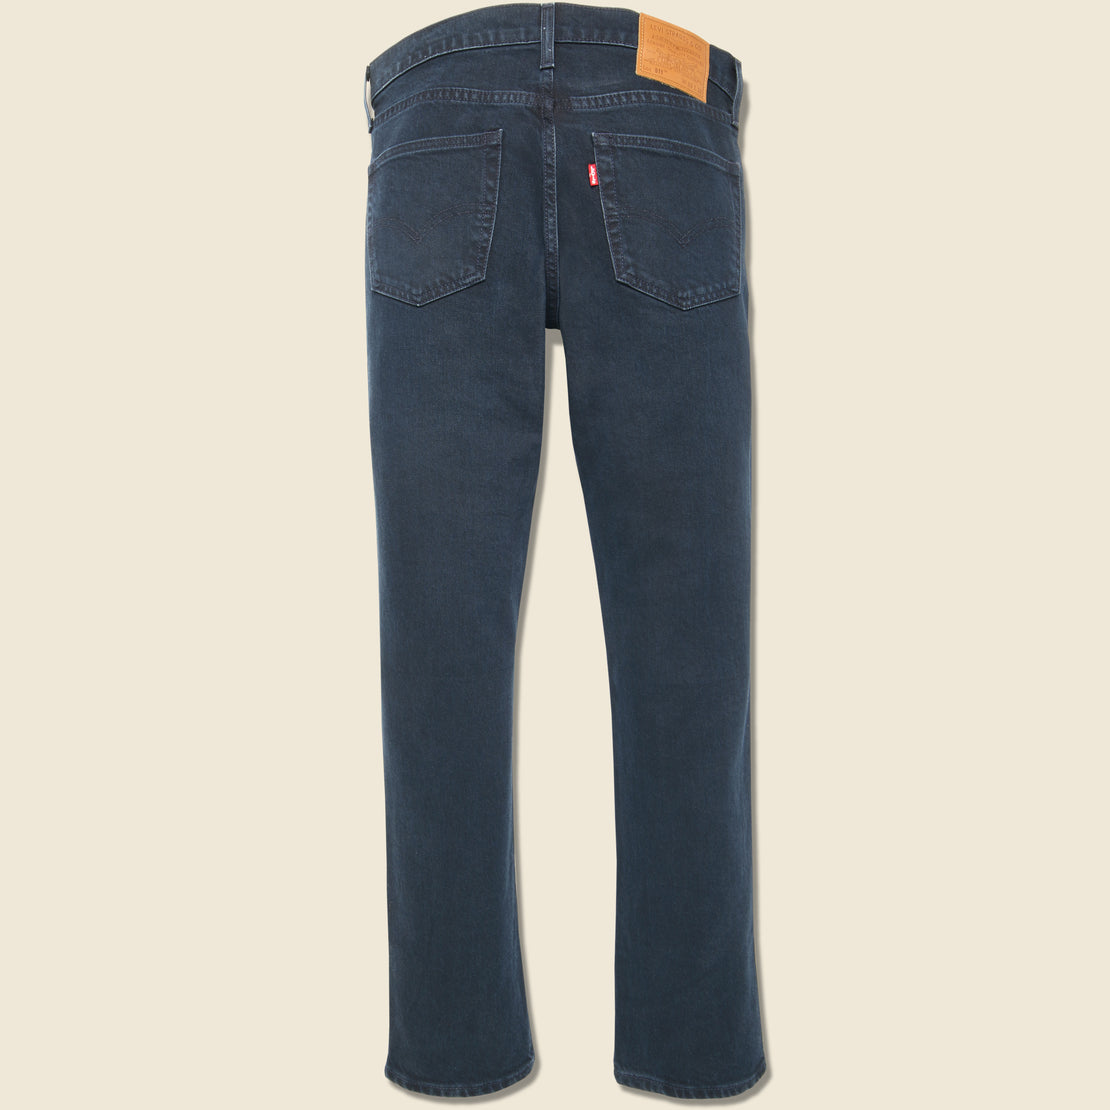 511 Slim Jean - Master of None - Levis Premium - STAG Provisions - Pants - Denim